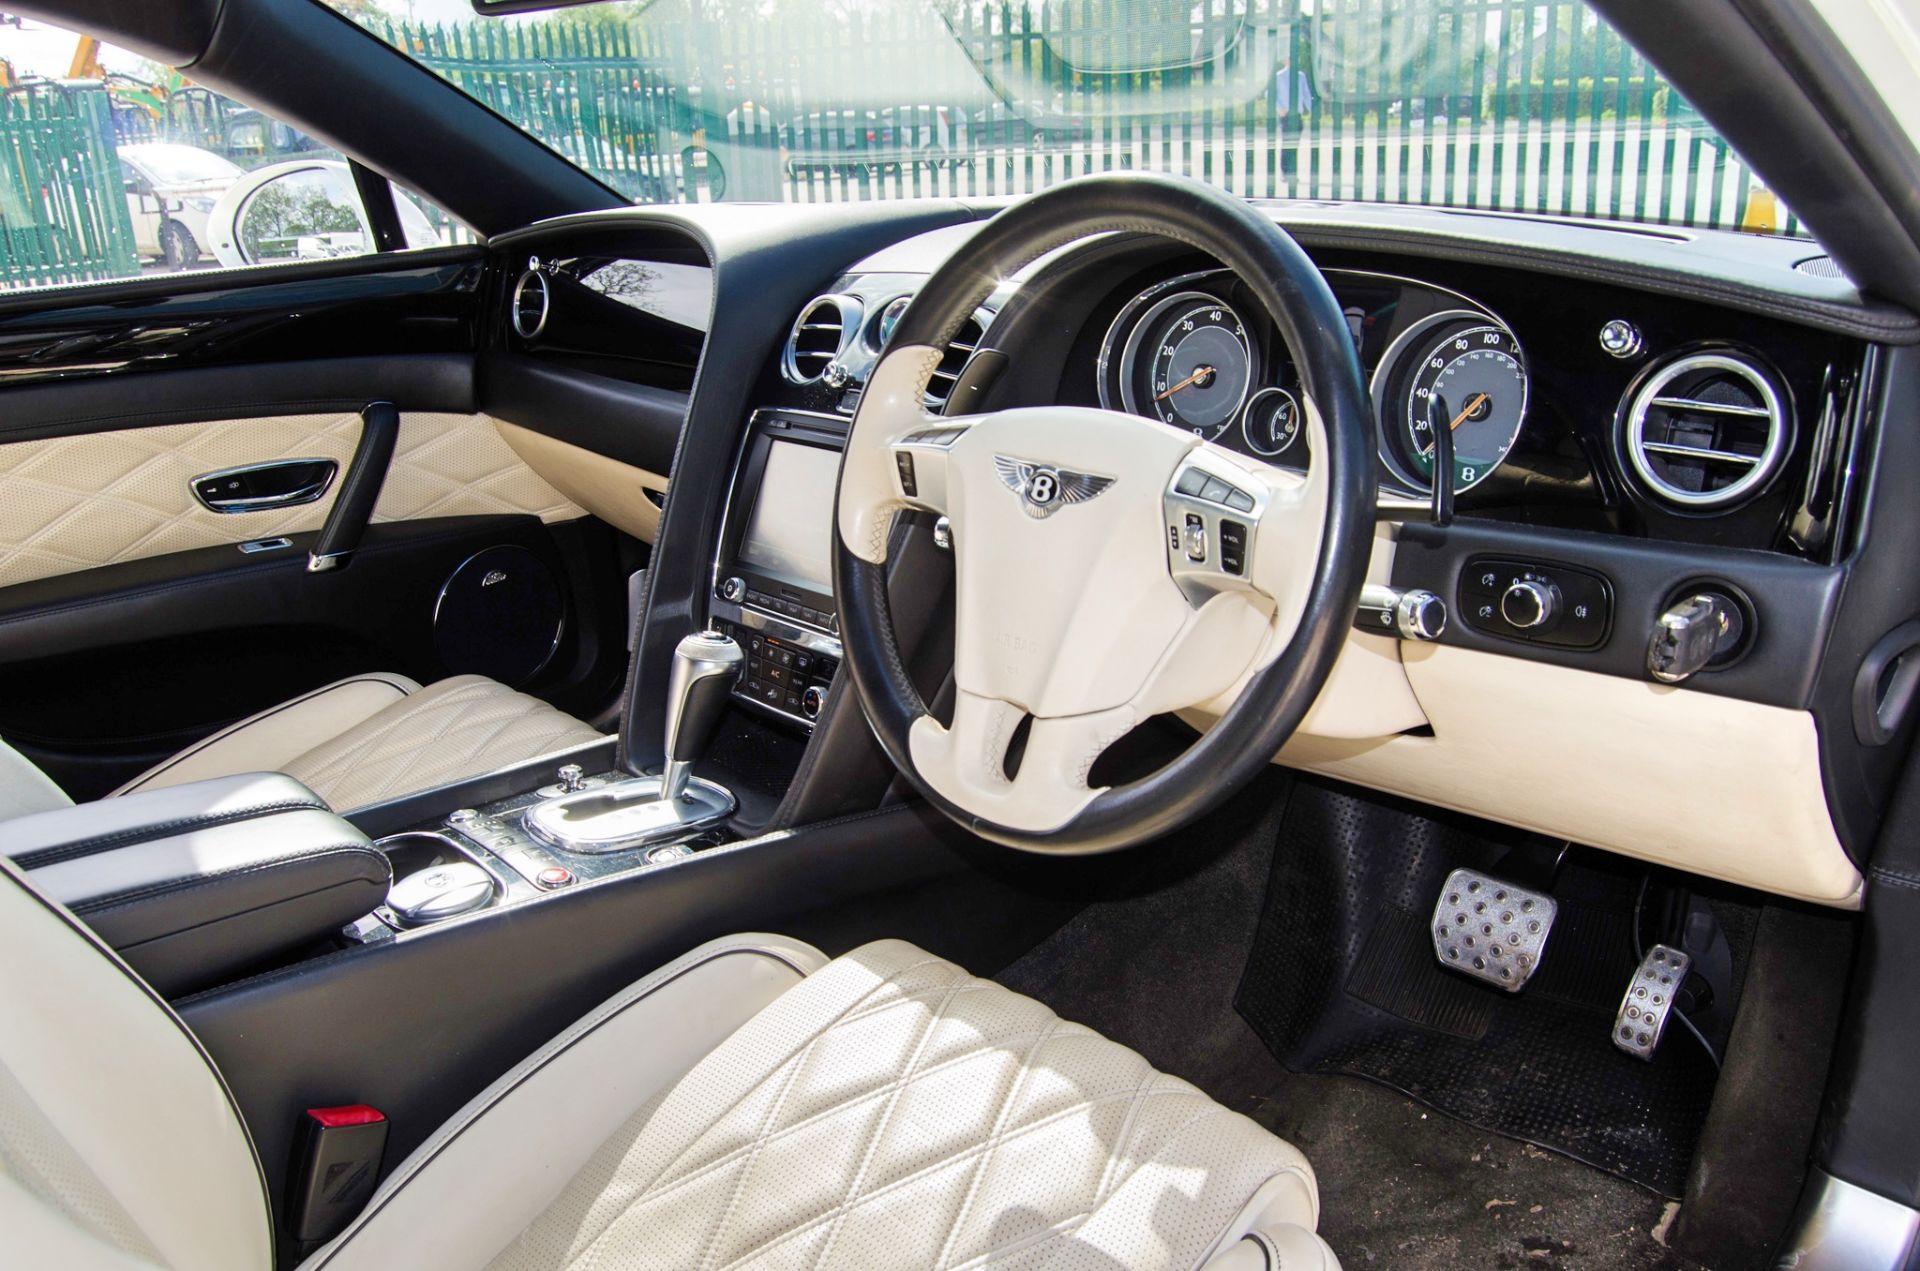 2013 Bentley Flying Spur 5998cc W12 Auto 4 door saloon car - Image 29 of 55